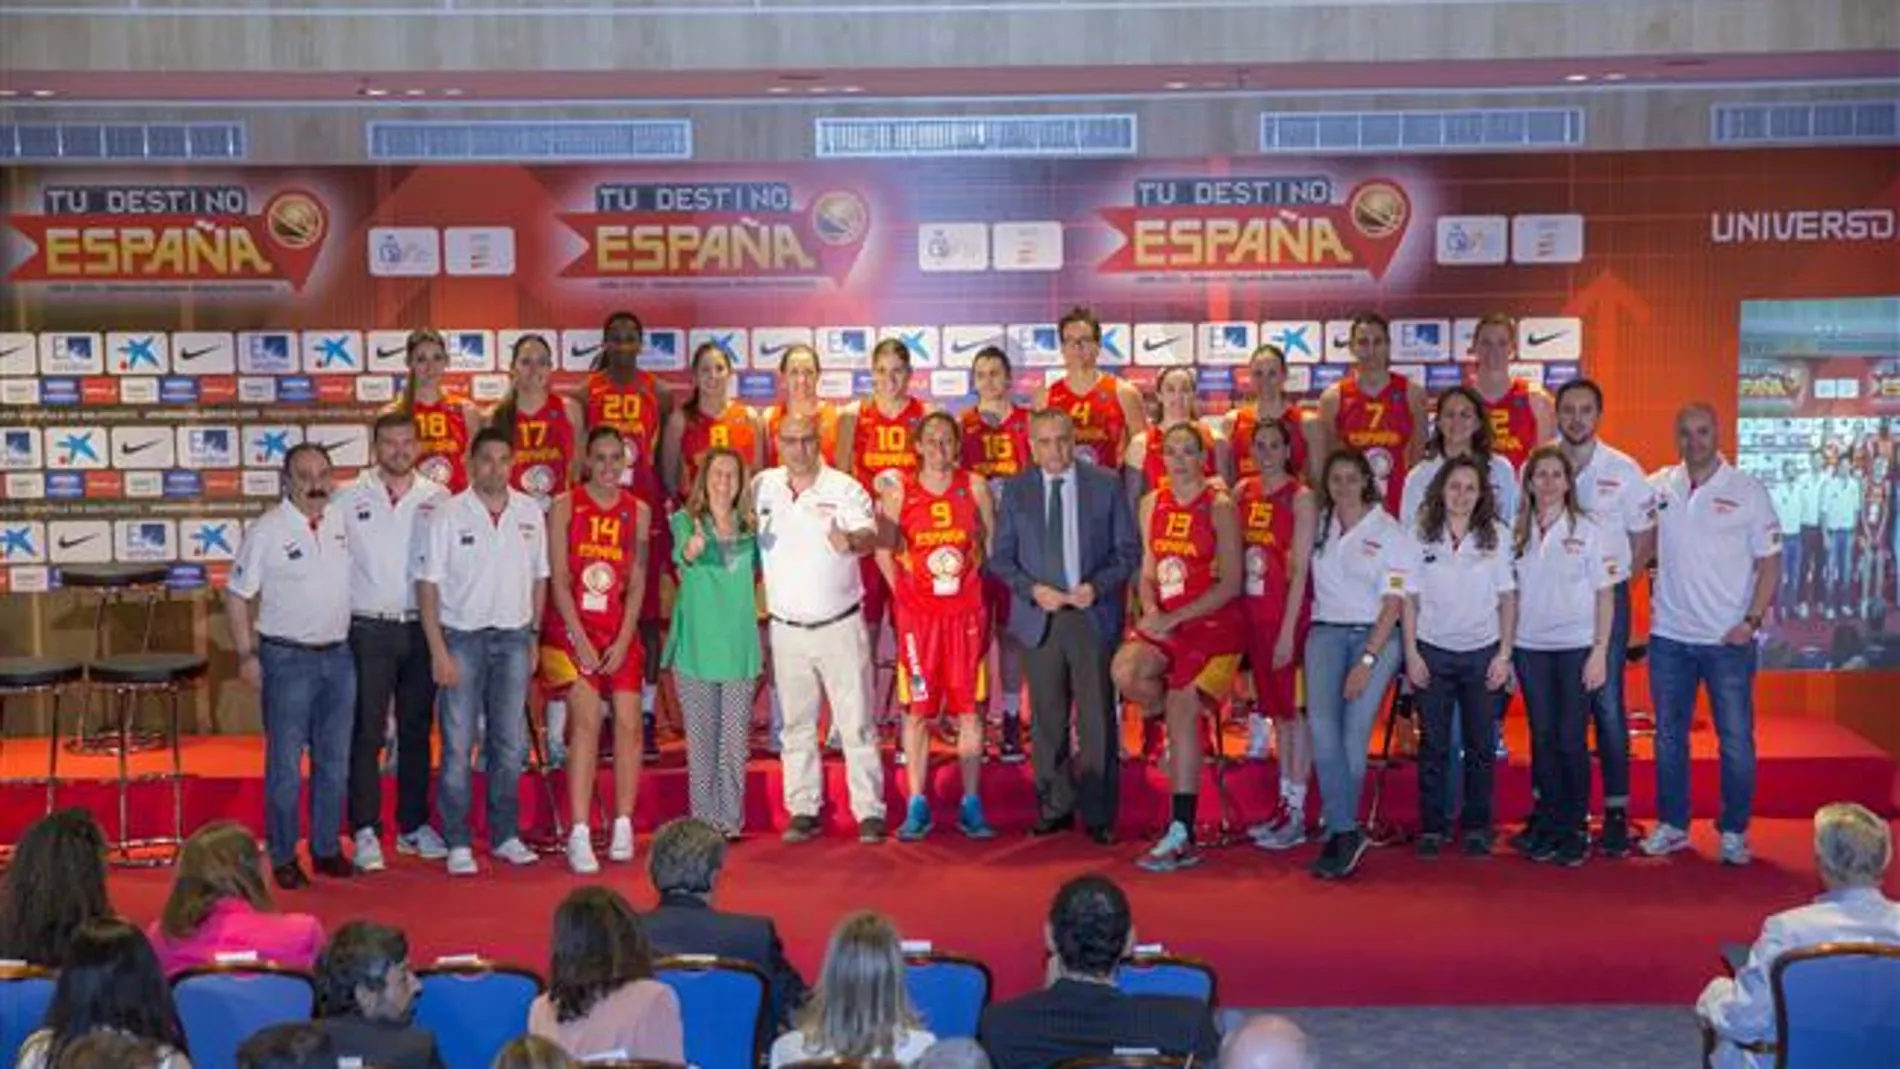 La Selección Española Femenina, que afrontará la disputa del EuroBasket 2015, fue presentada en Madrid con el patrocinio de Universo Mujer y el impulso de las ex jugadoras Ana Montañana, Cindy Lima y Marta Fernández.